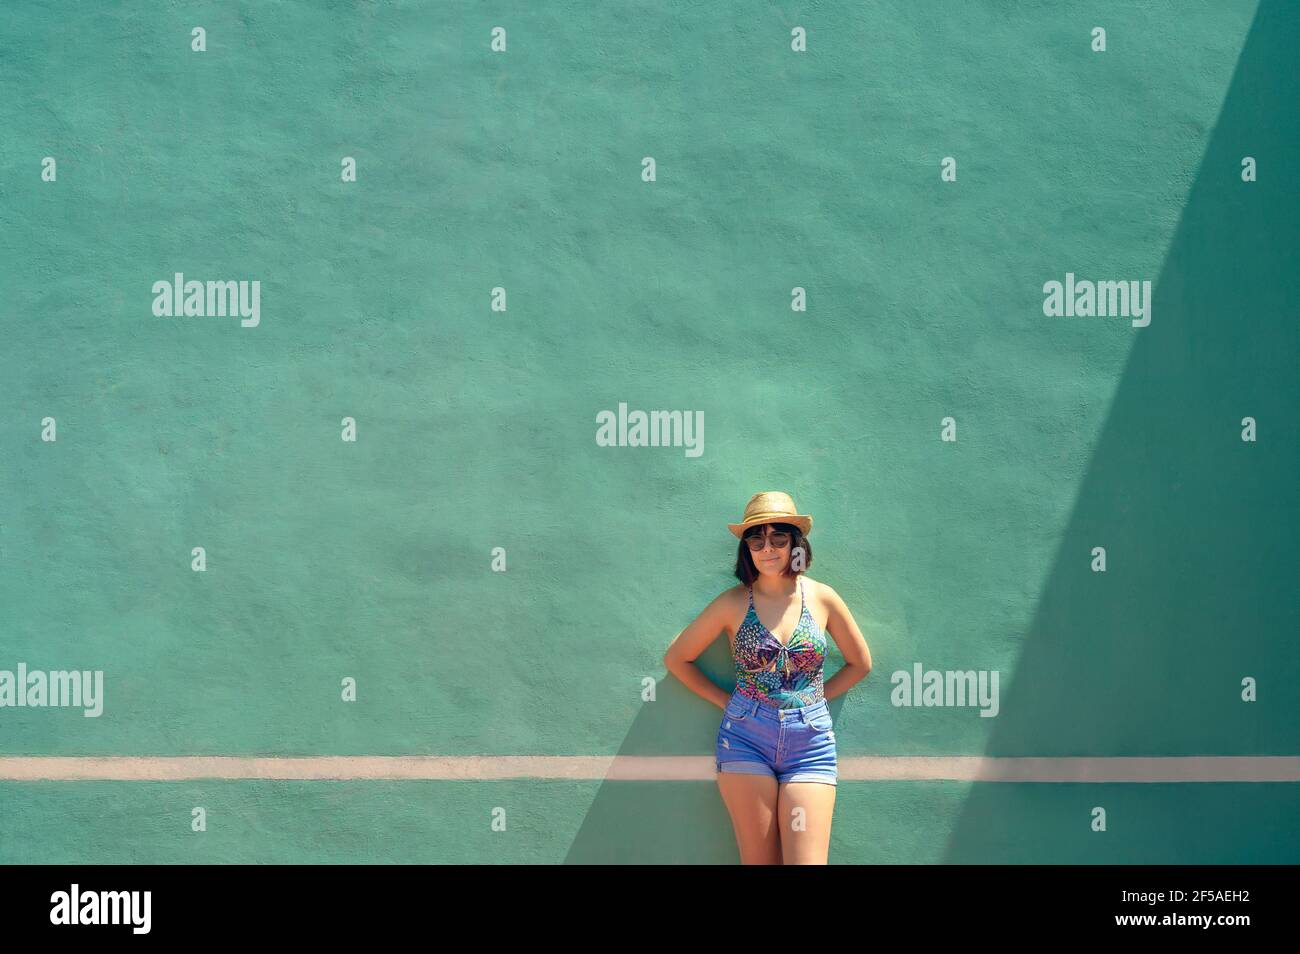 Ritratto di una bella giovane donna davanti ad un allenamento parete su un tennis Foto Stock